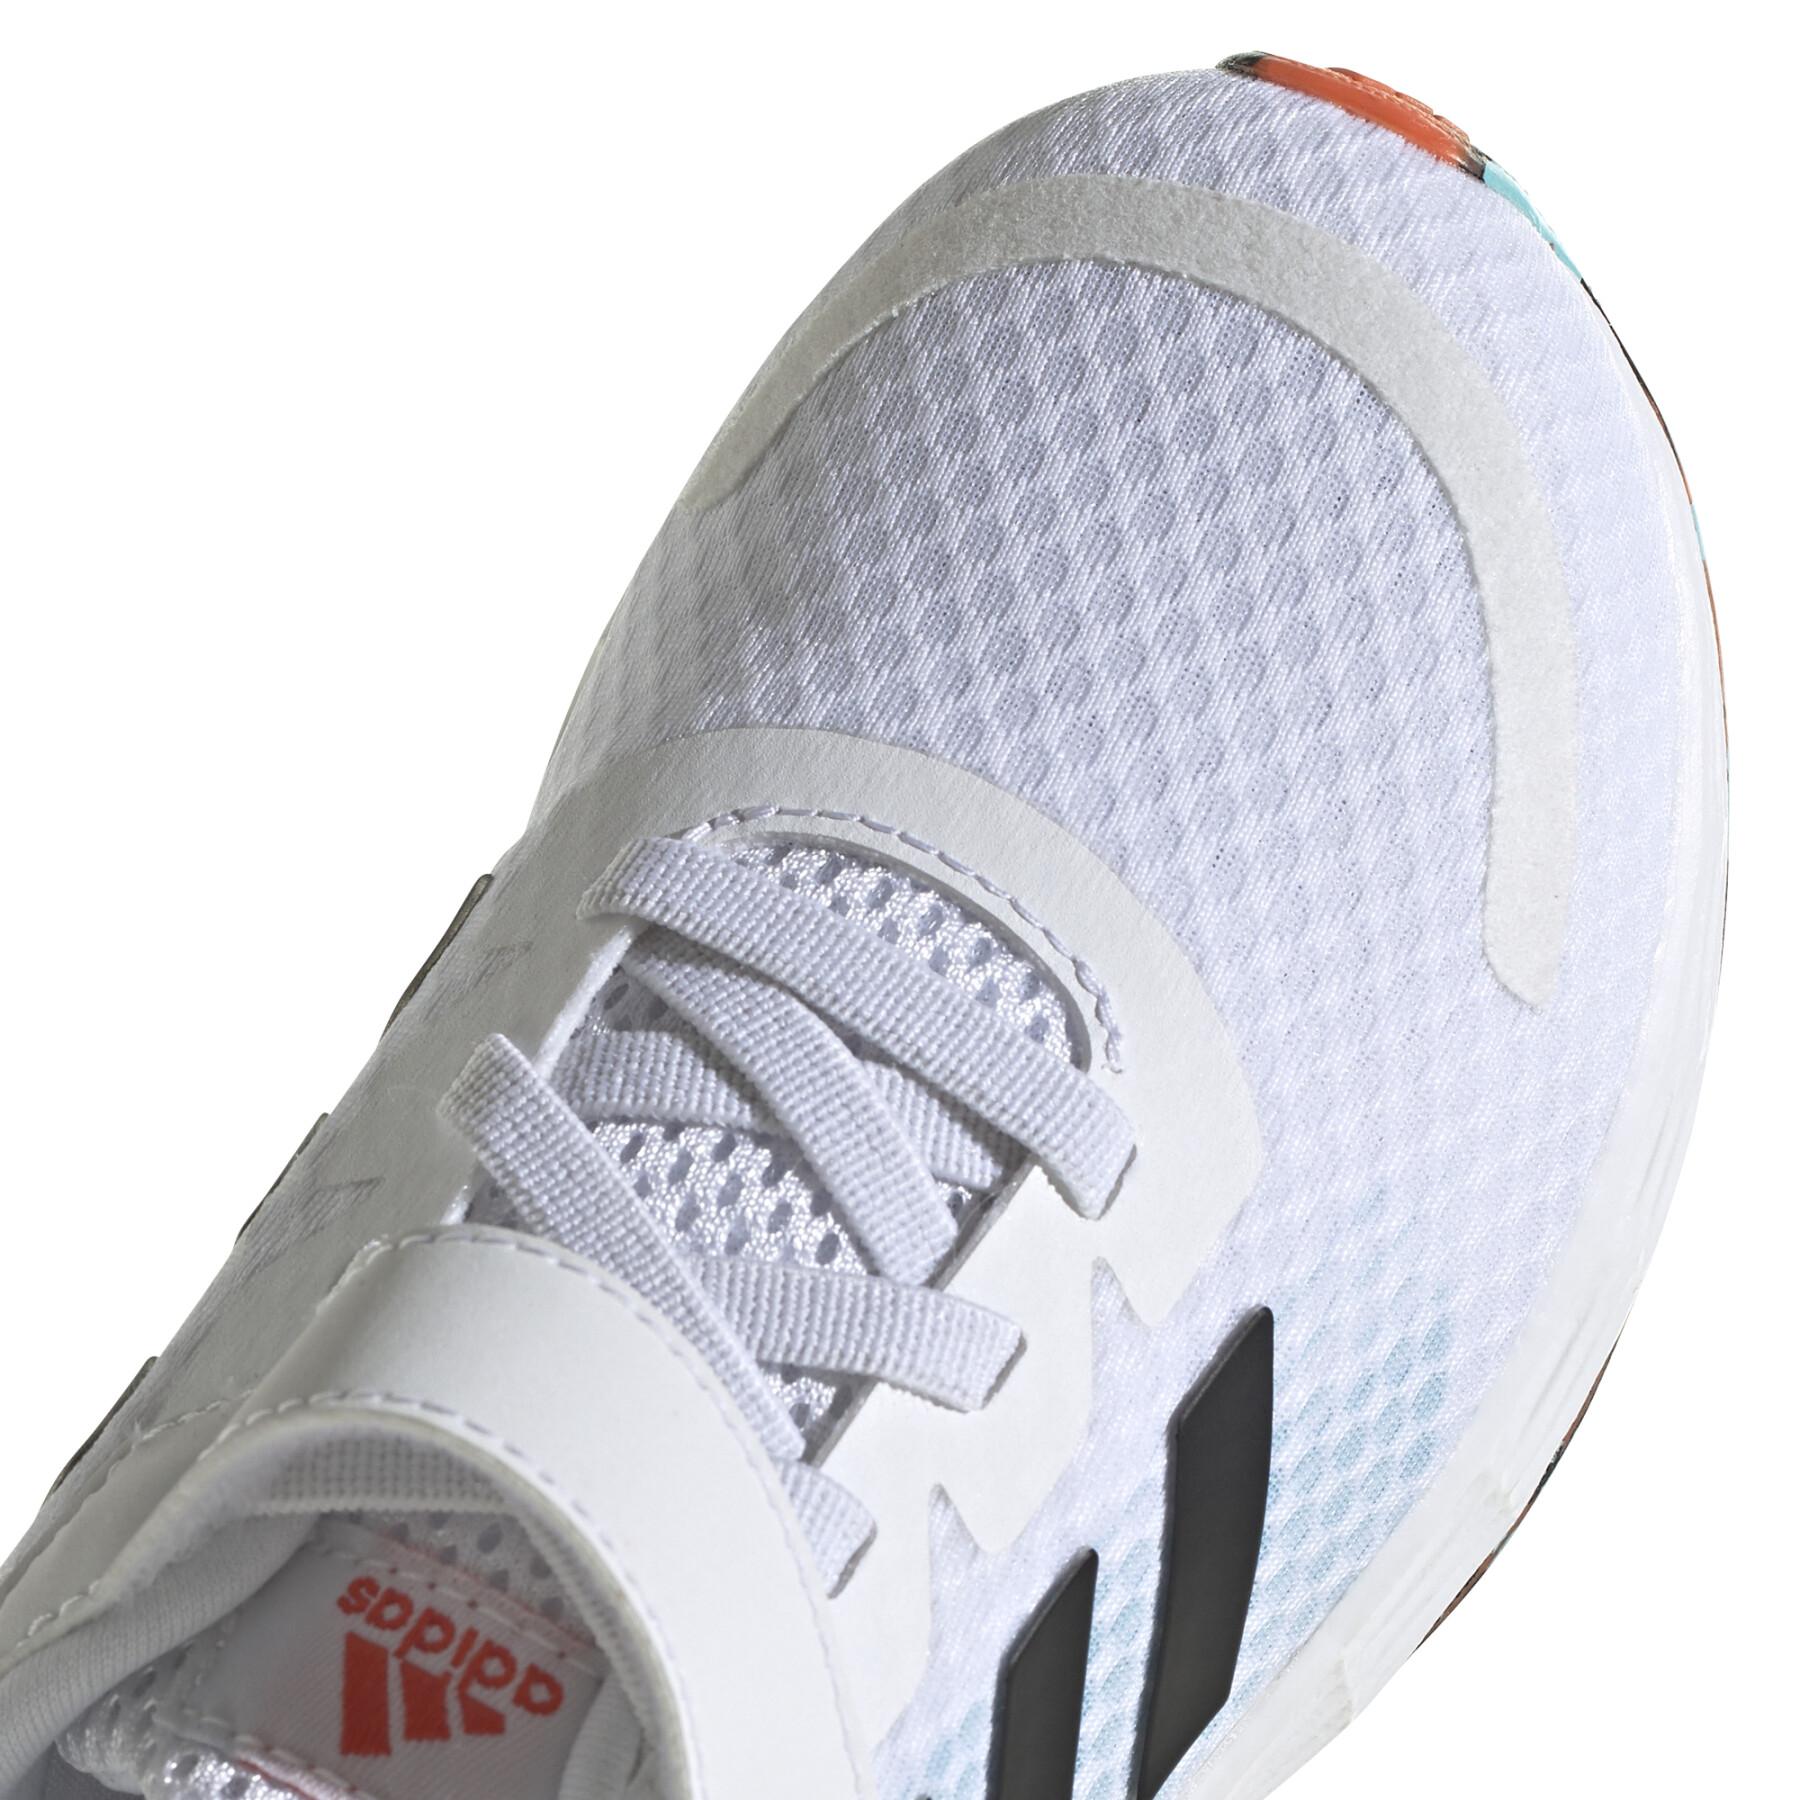 Buty do biegania dla dzieci adidas Duramo SL